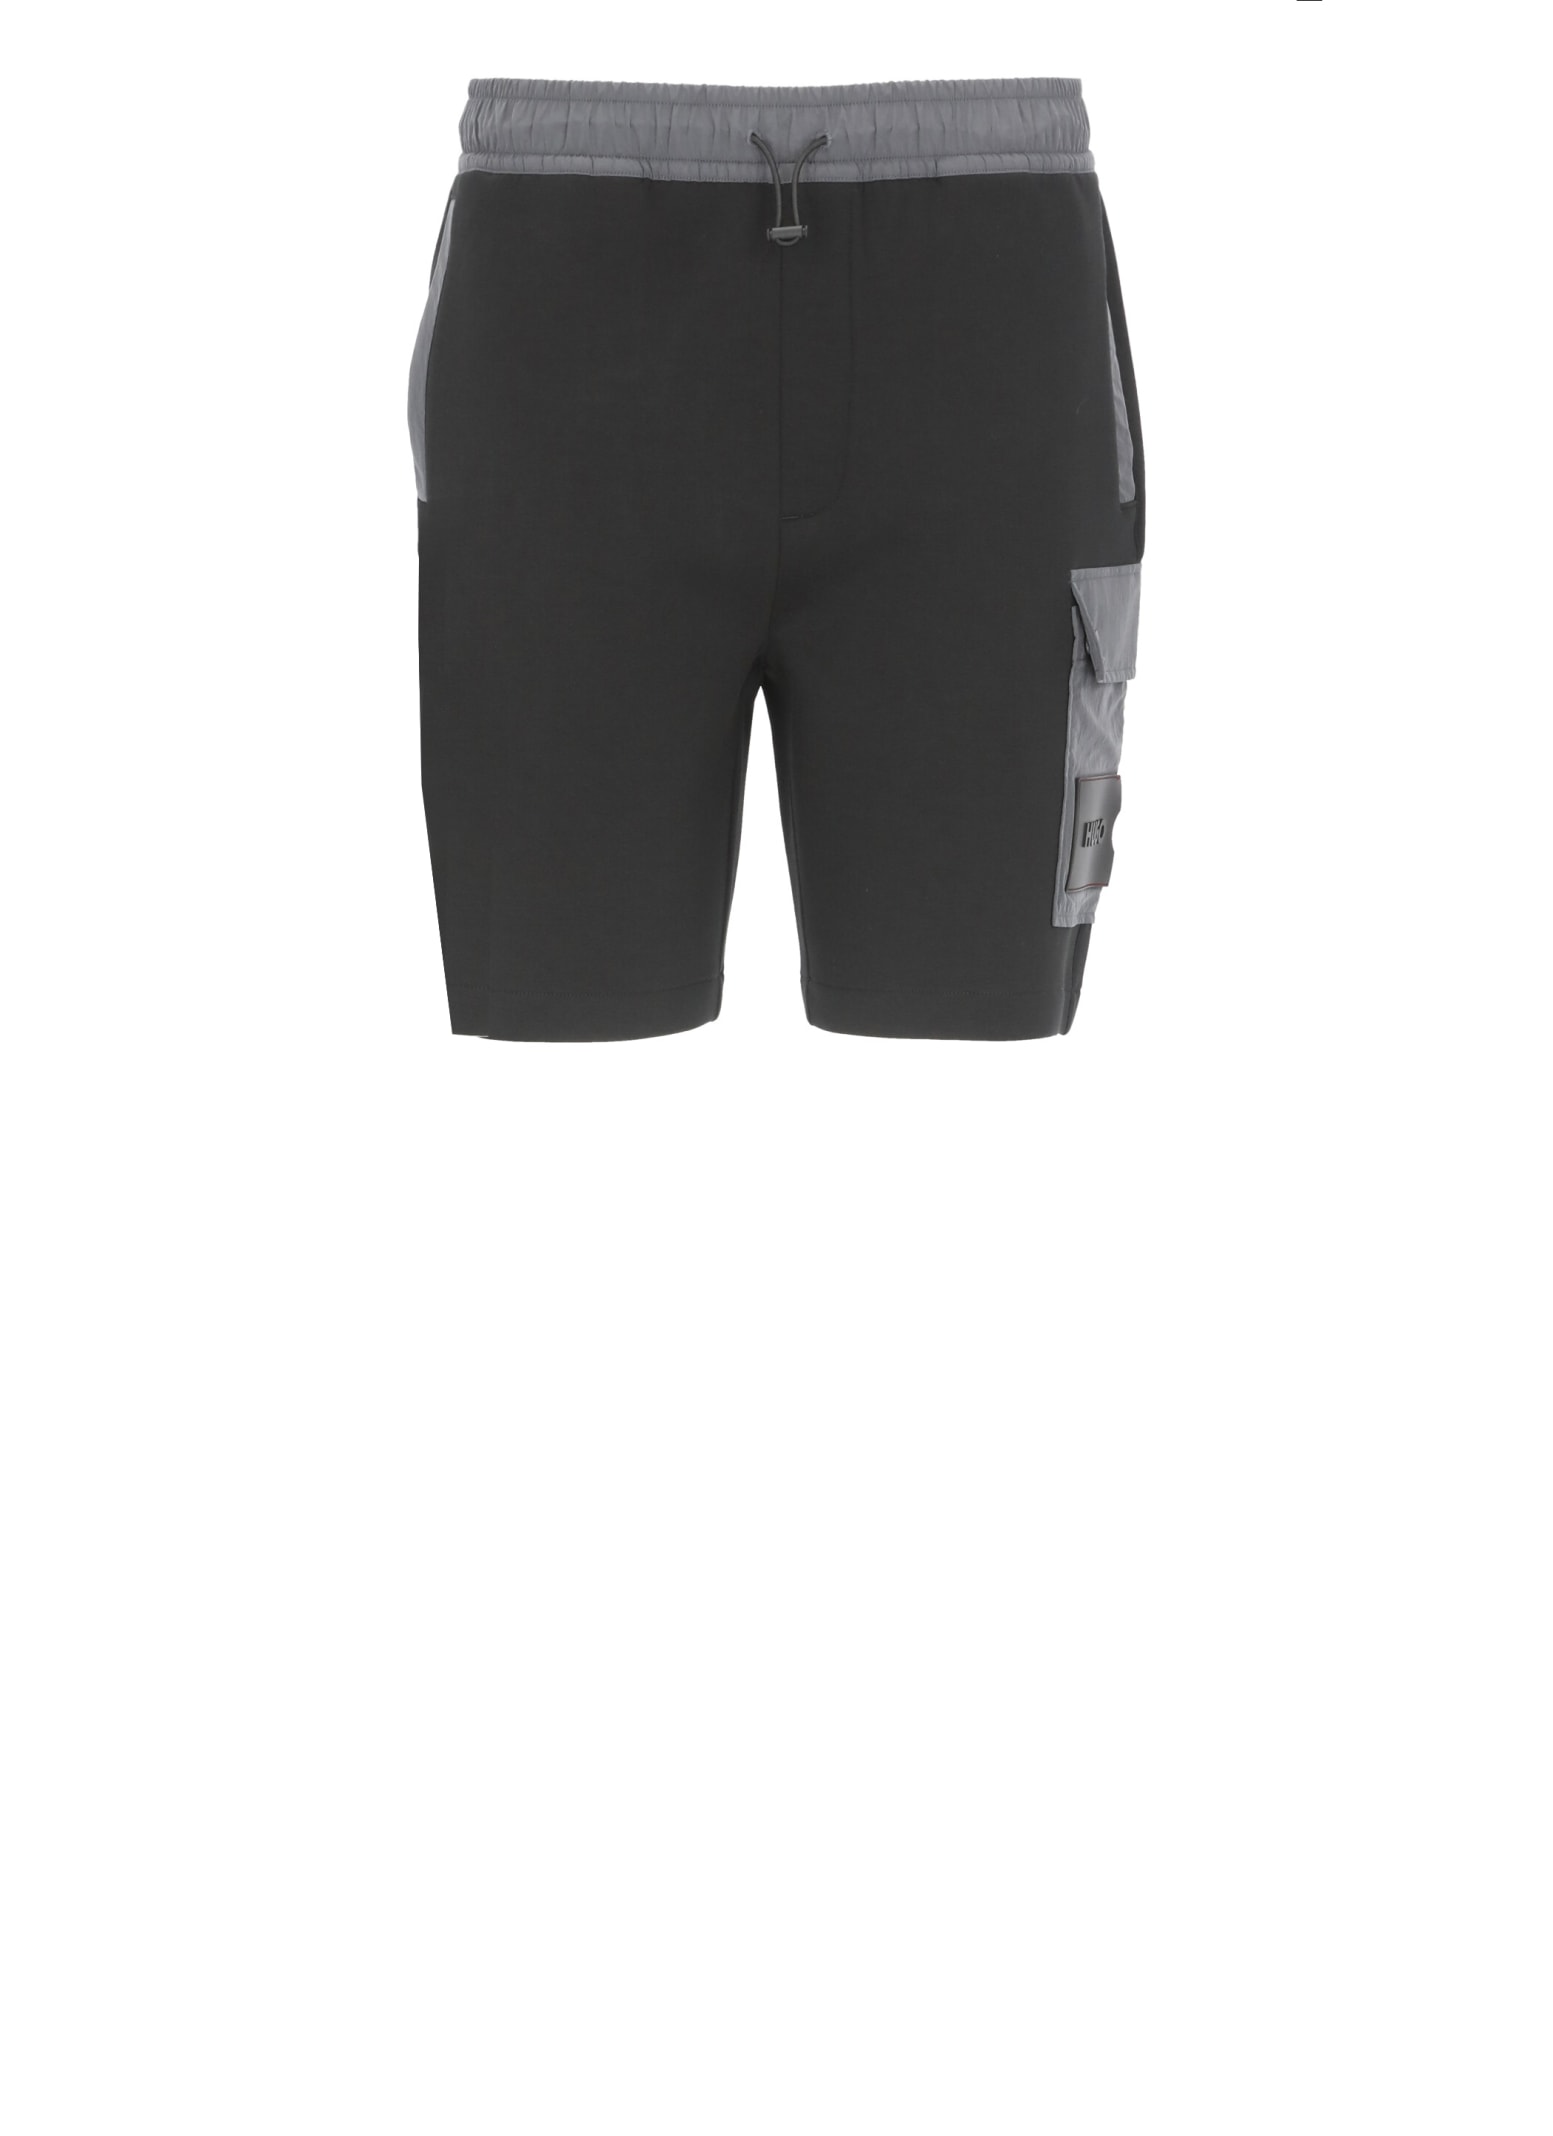 Hugo Boss dowen shorts